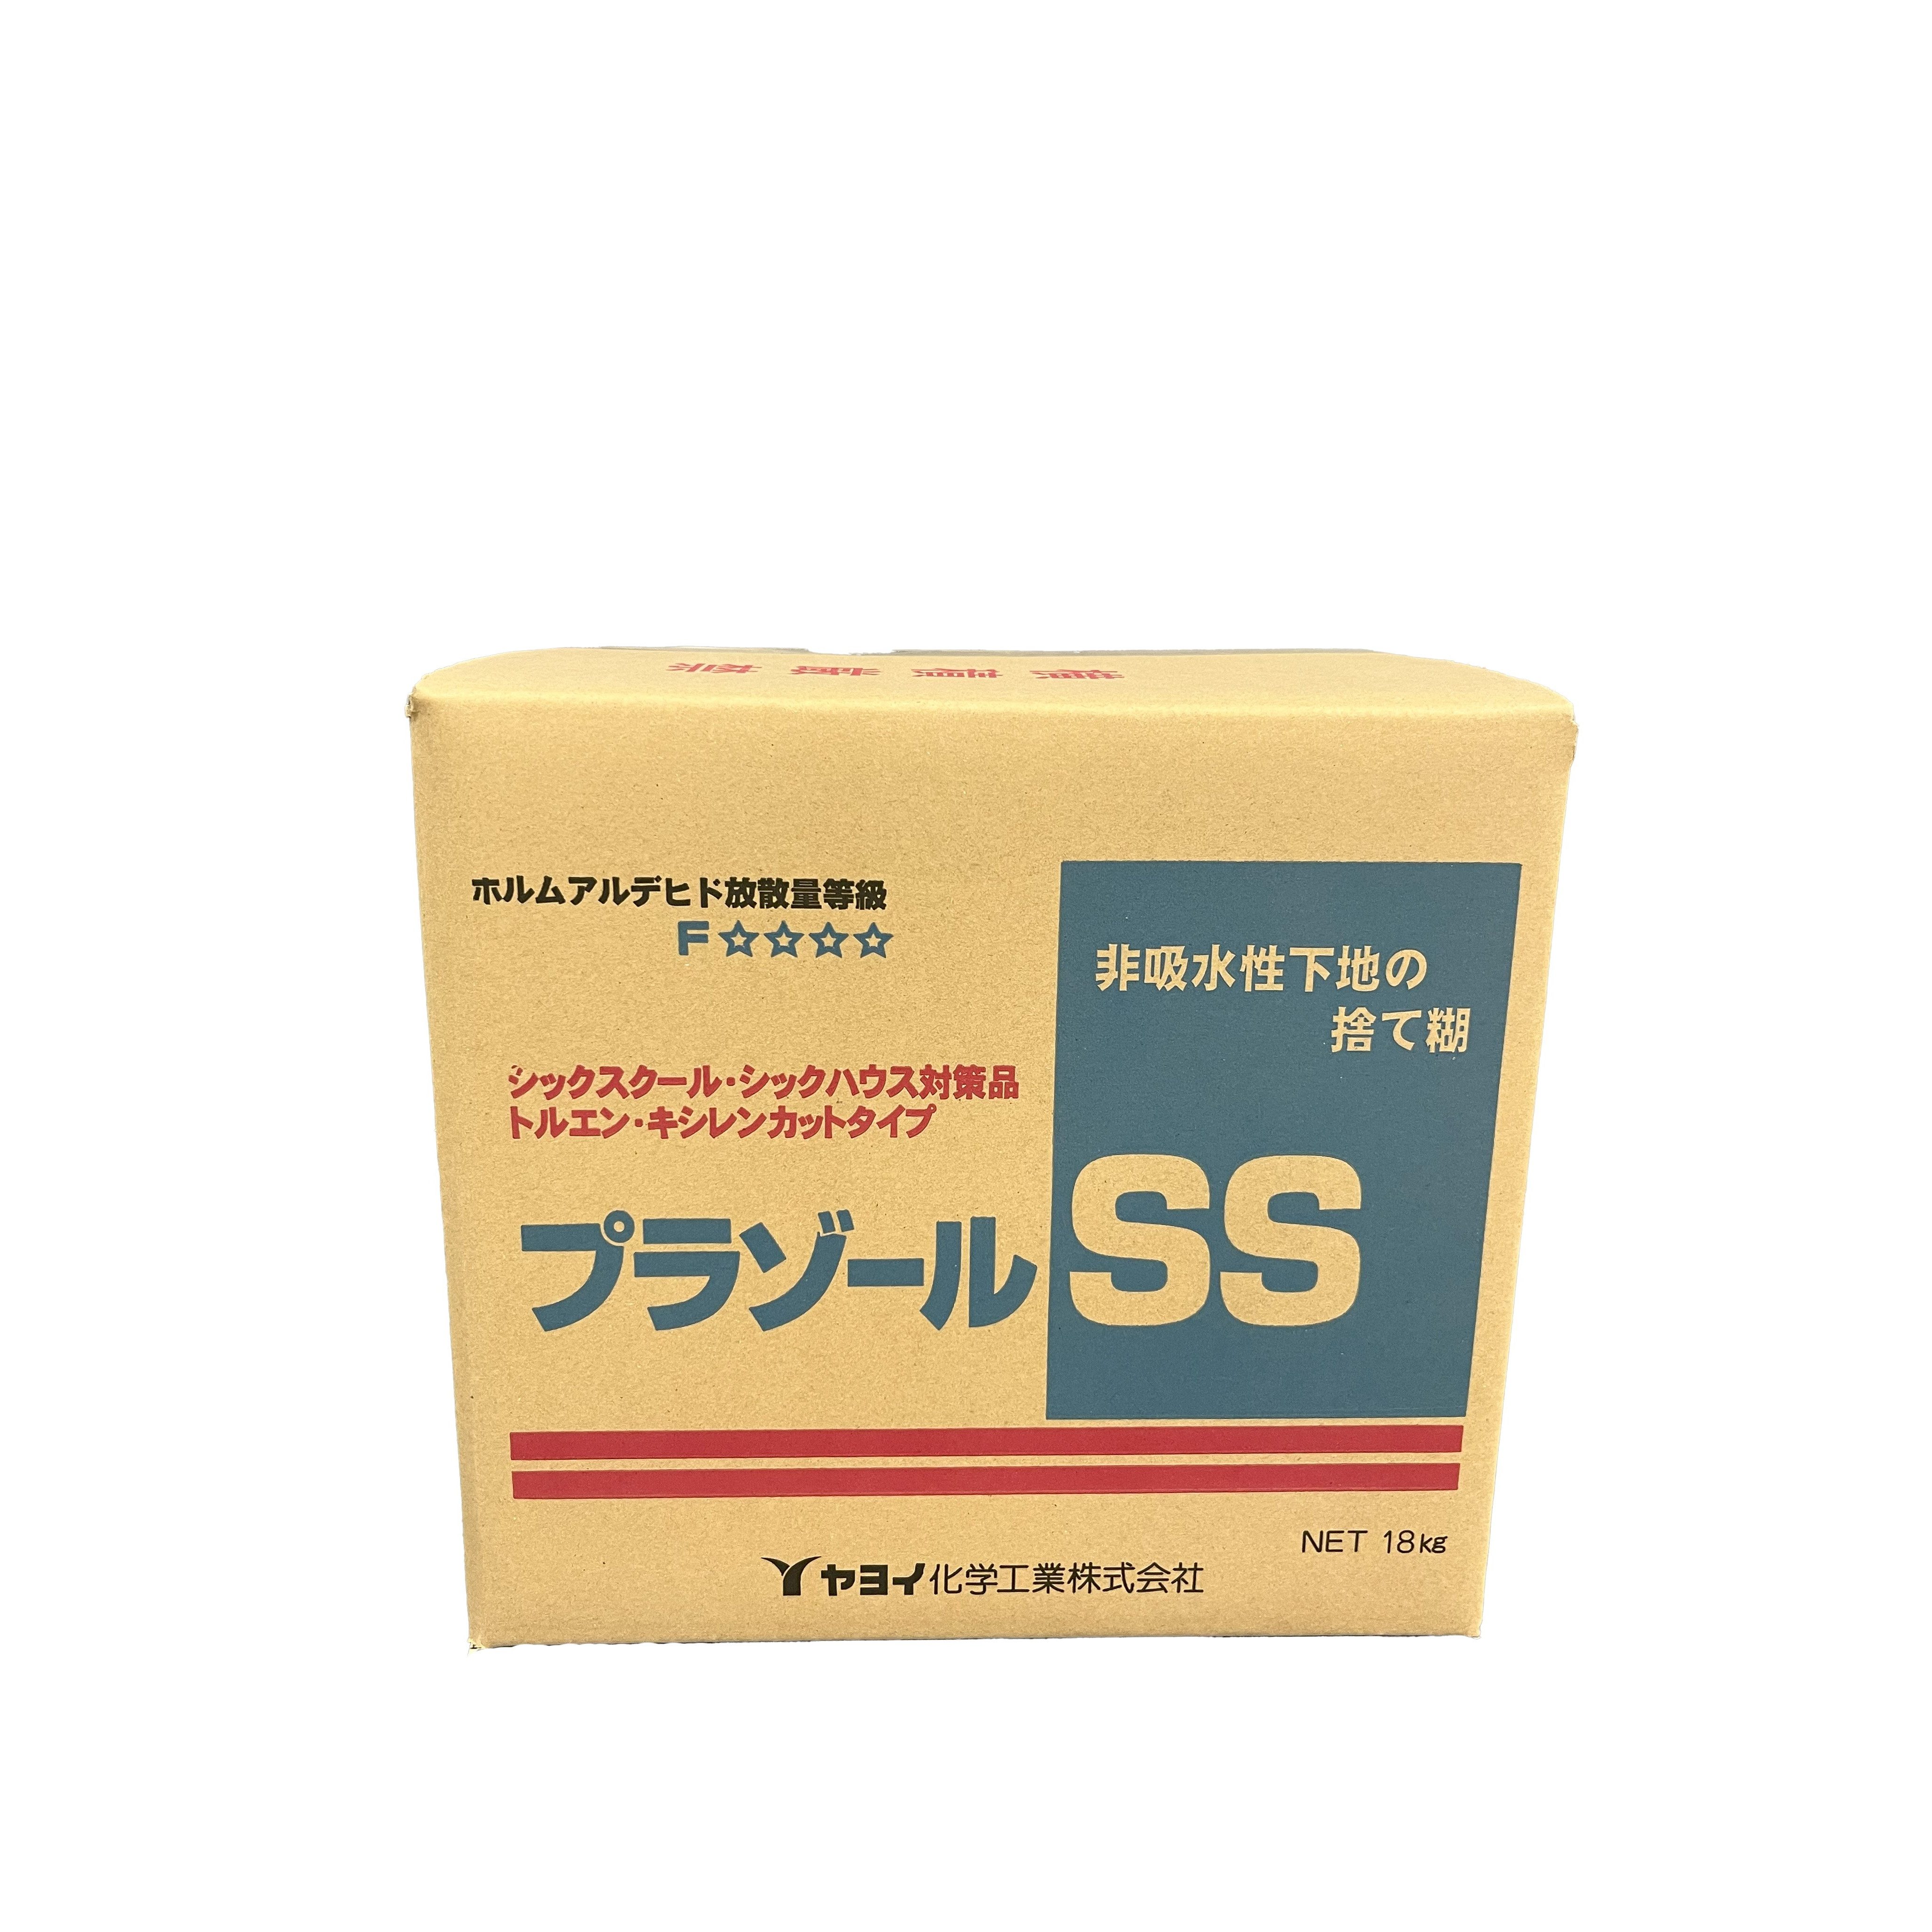 プラゾール SS 18kg【送料込み】 ヤヨイ化学工業【アウンワークス通販】